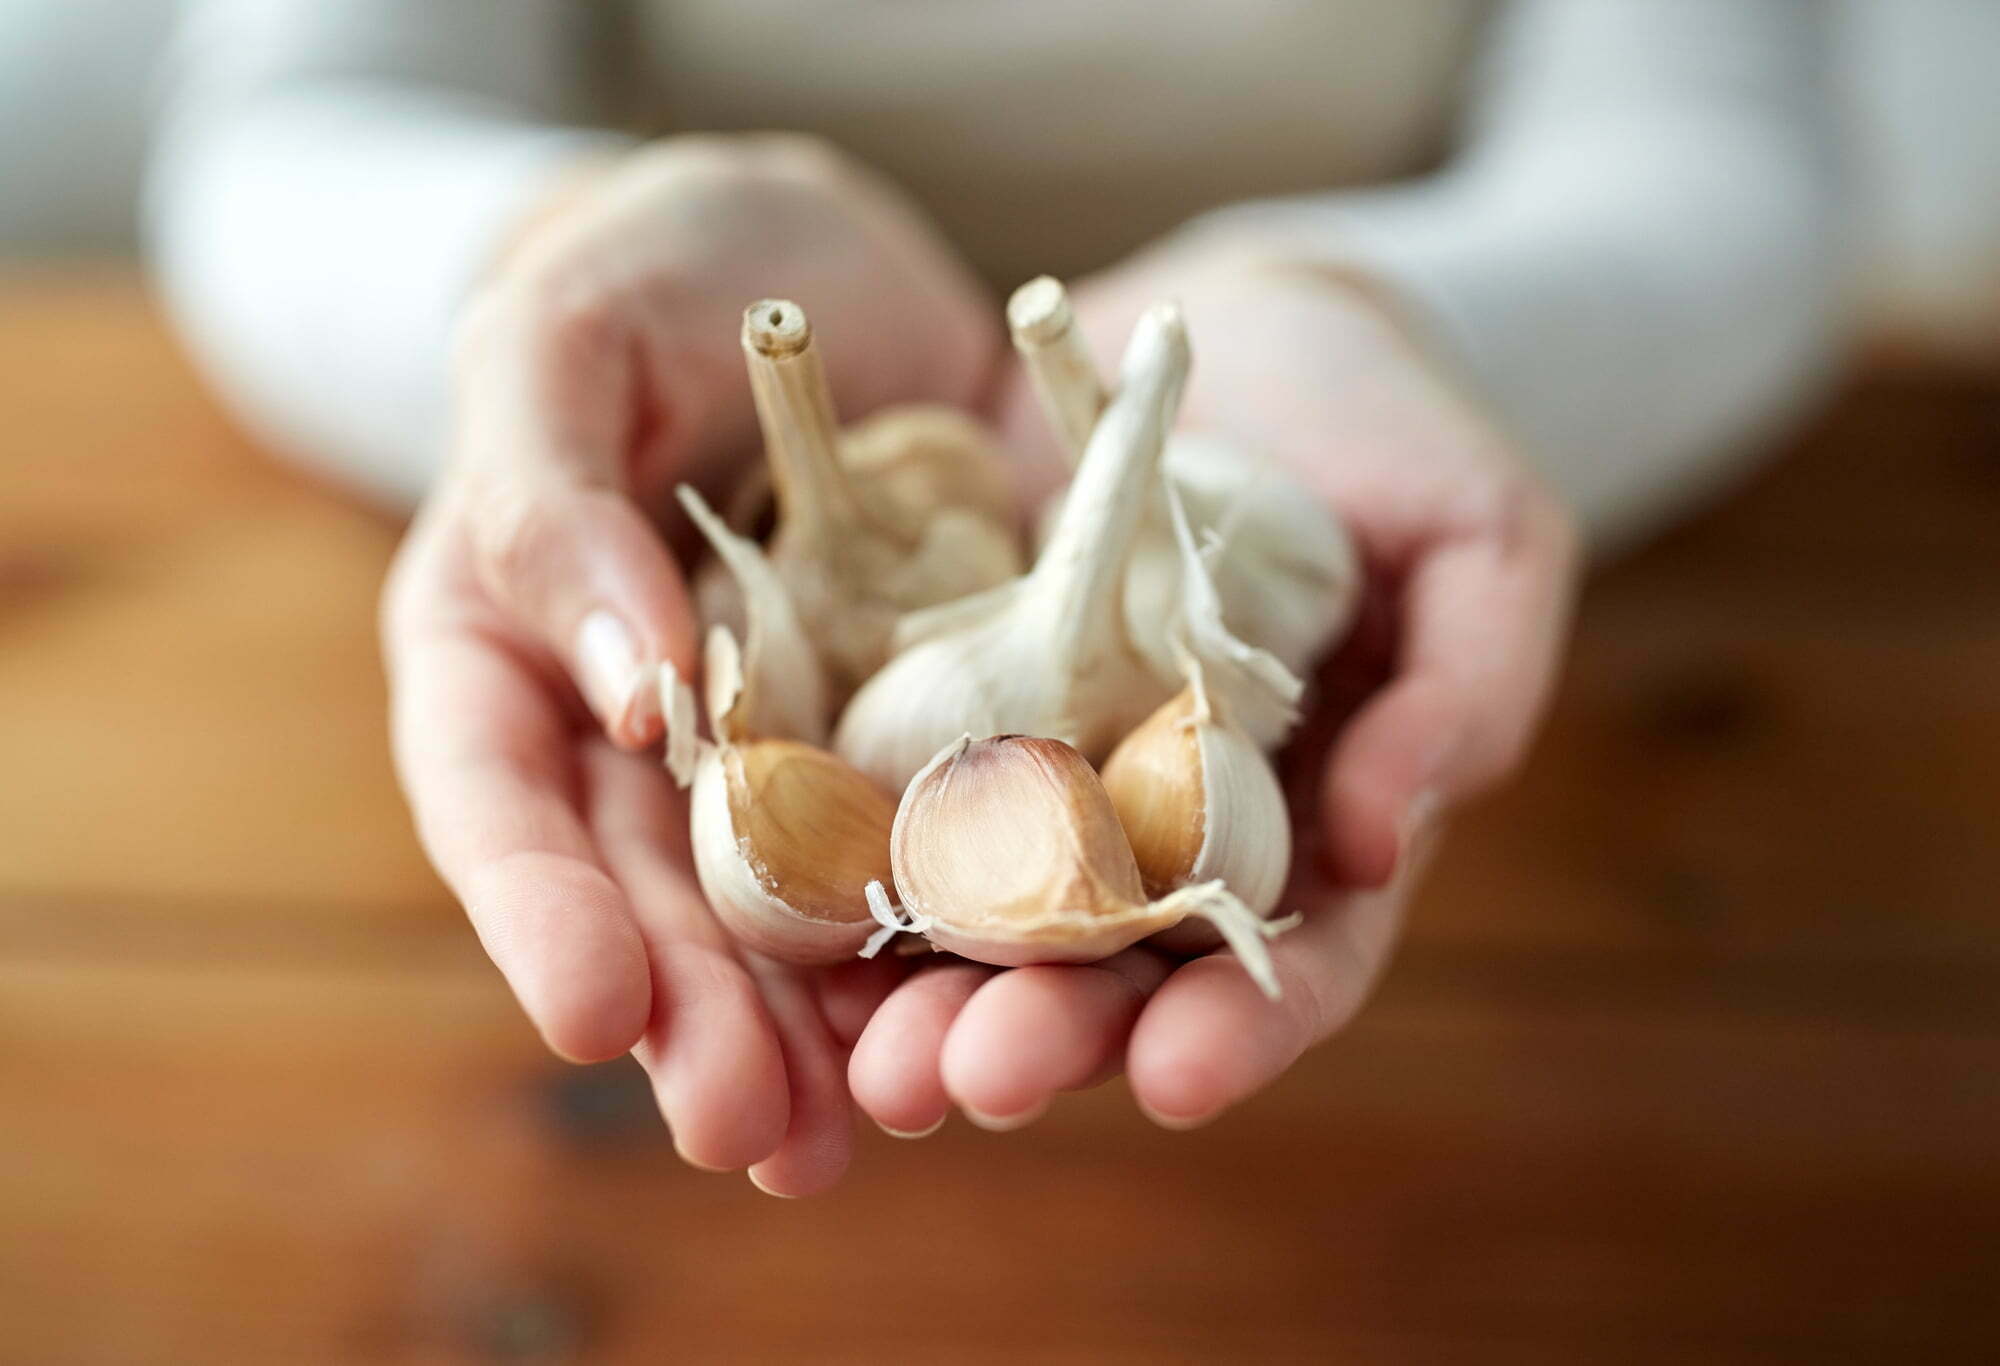 Why Am I Craving Garlic - Strange Cravings Explained! 1